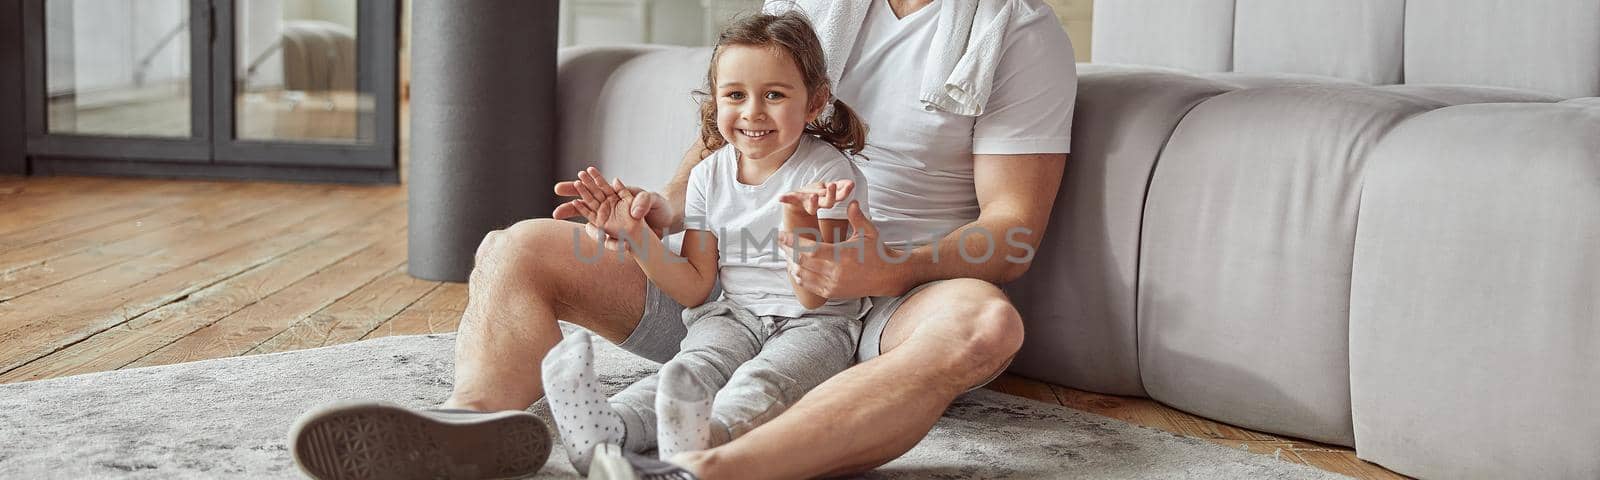 Smiling little girl in dad hugs indoors by Yaroslav_astakhov